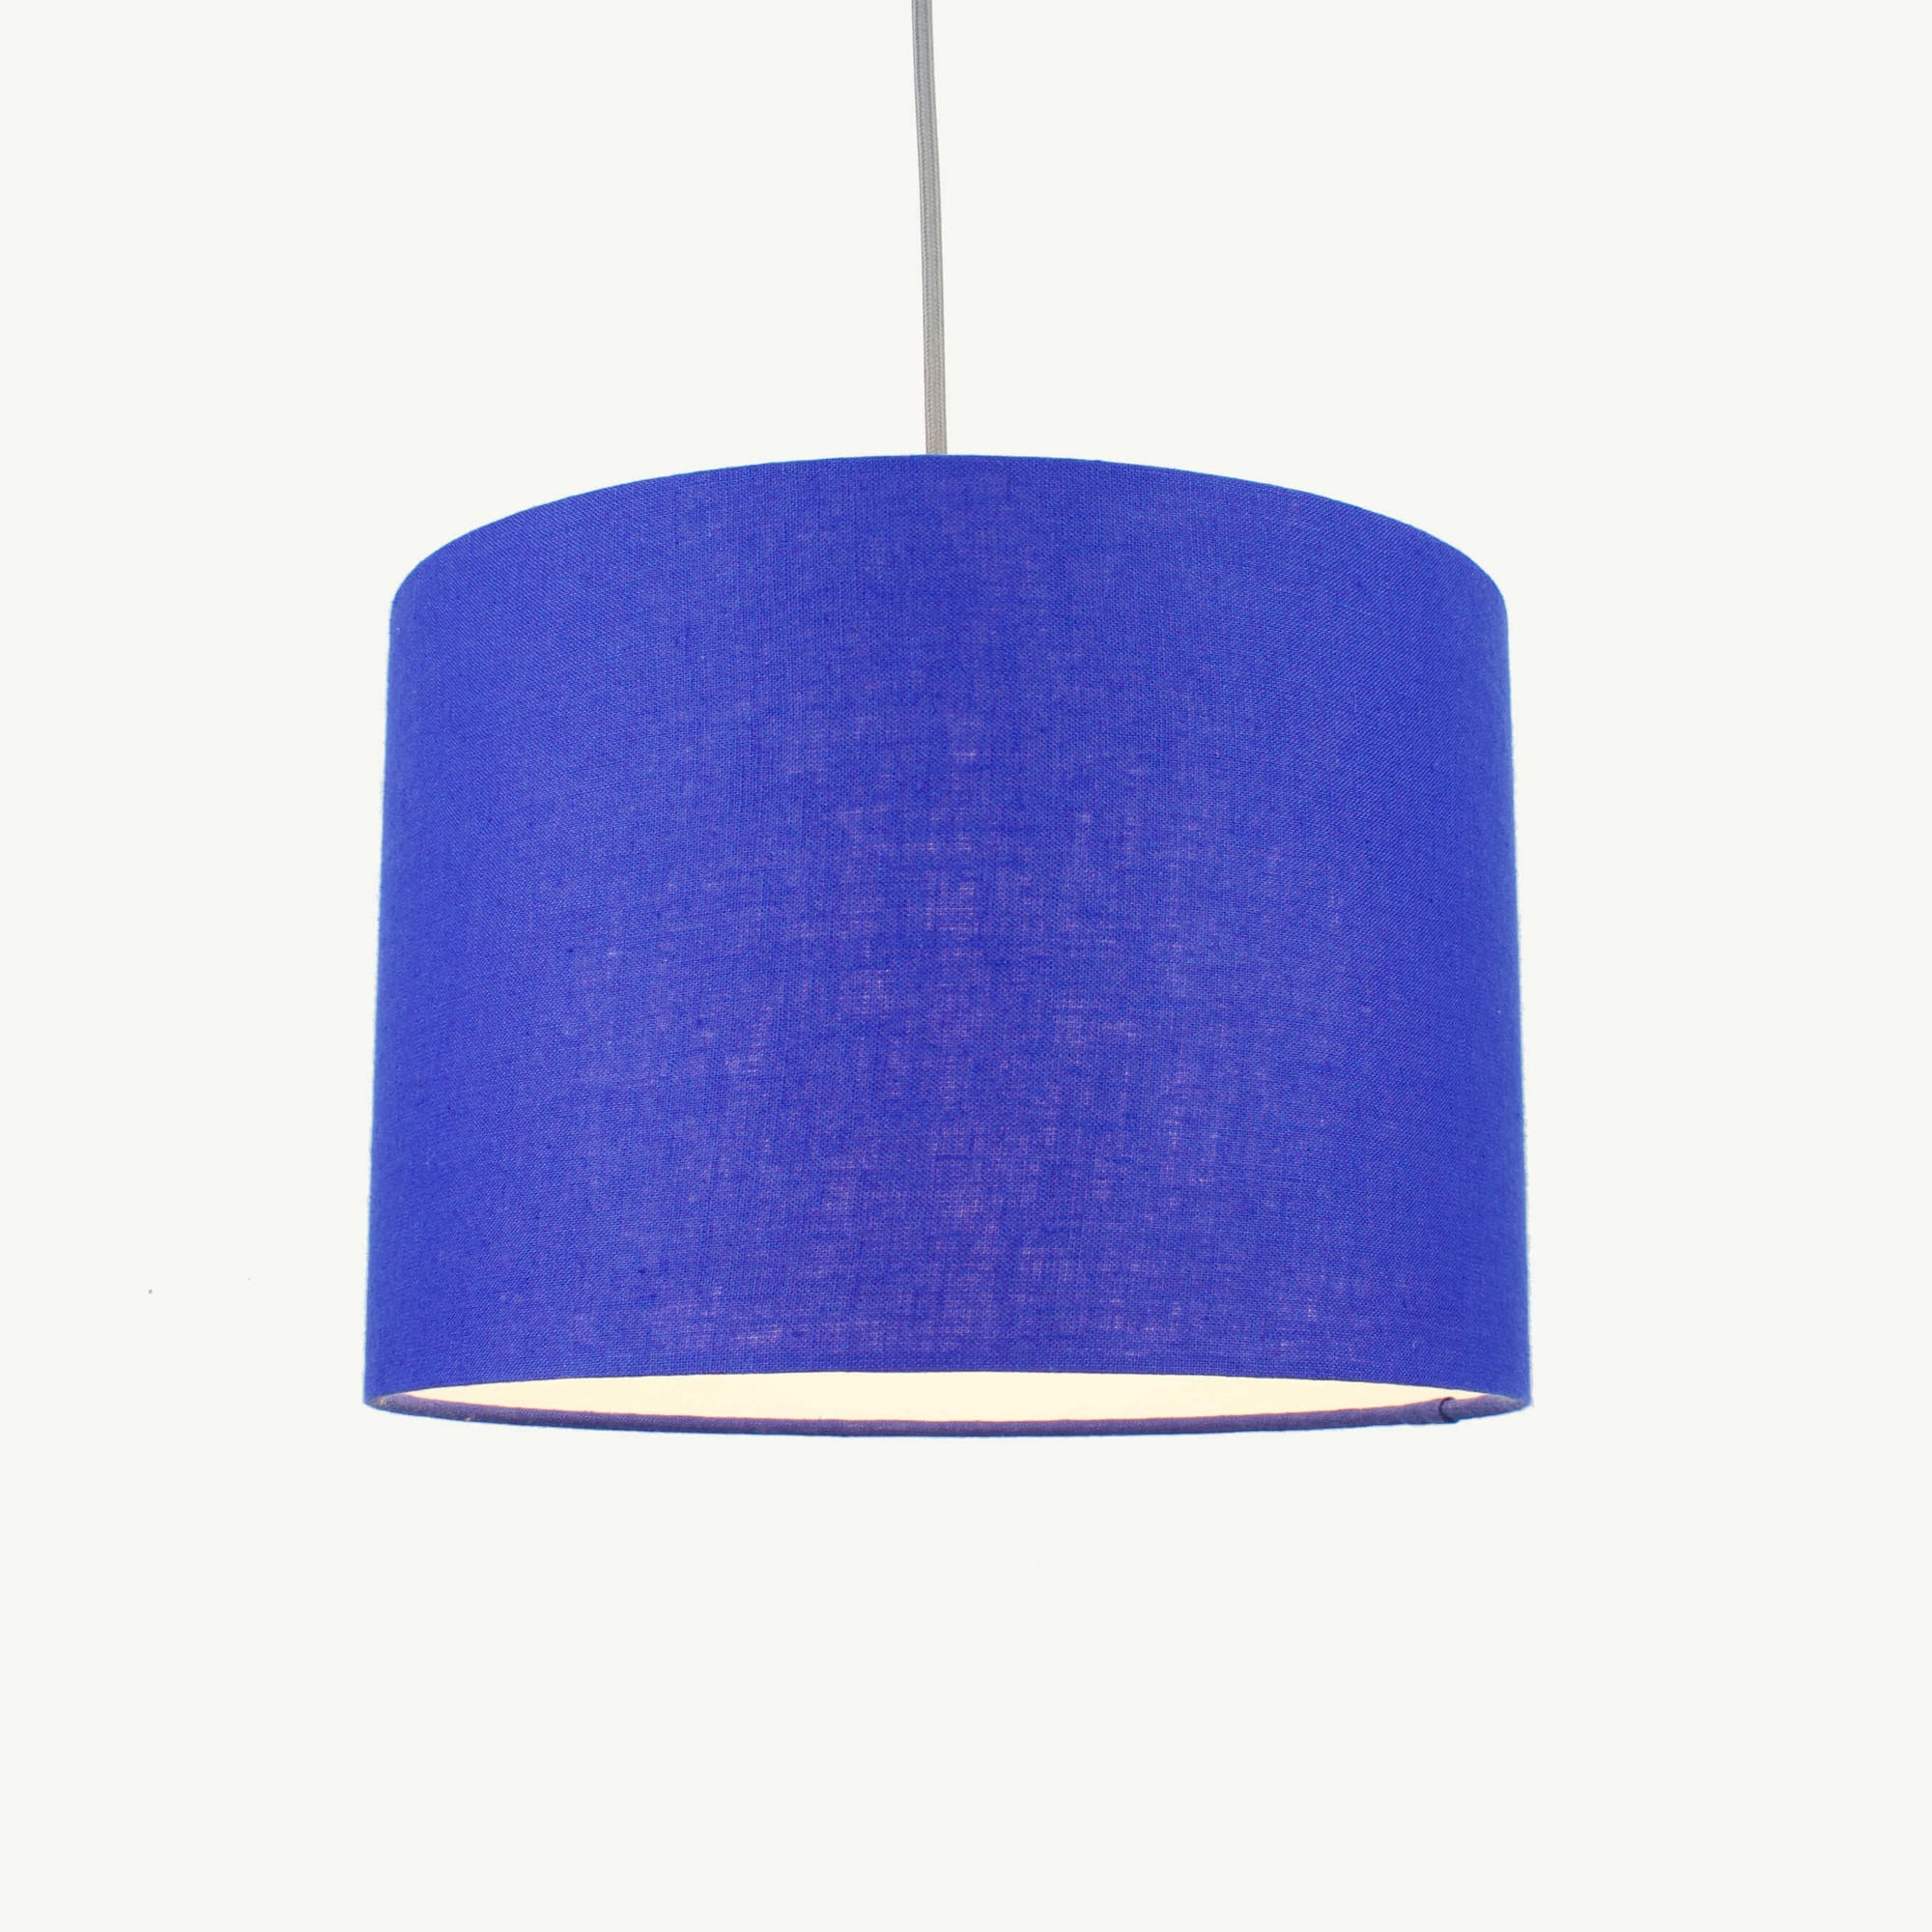 Royal Blue Linen Lampshade - Tropikala